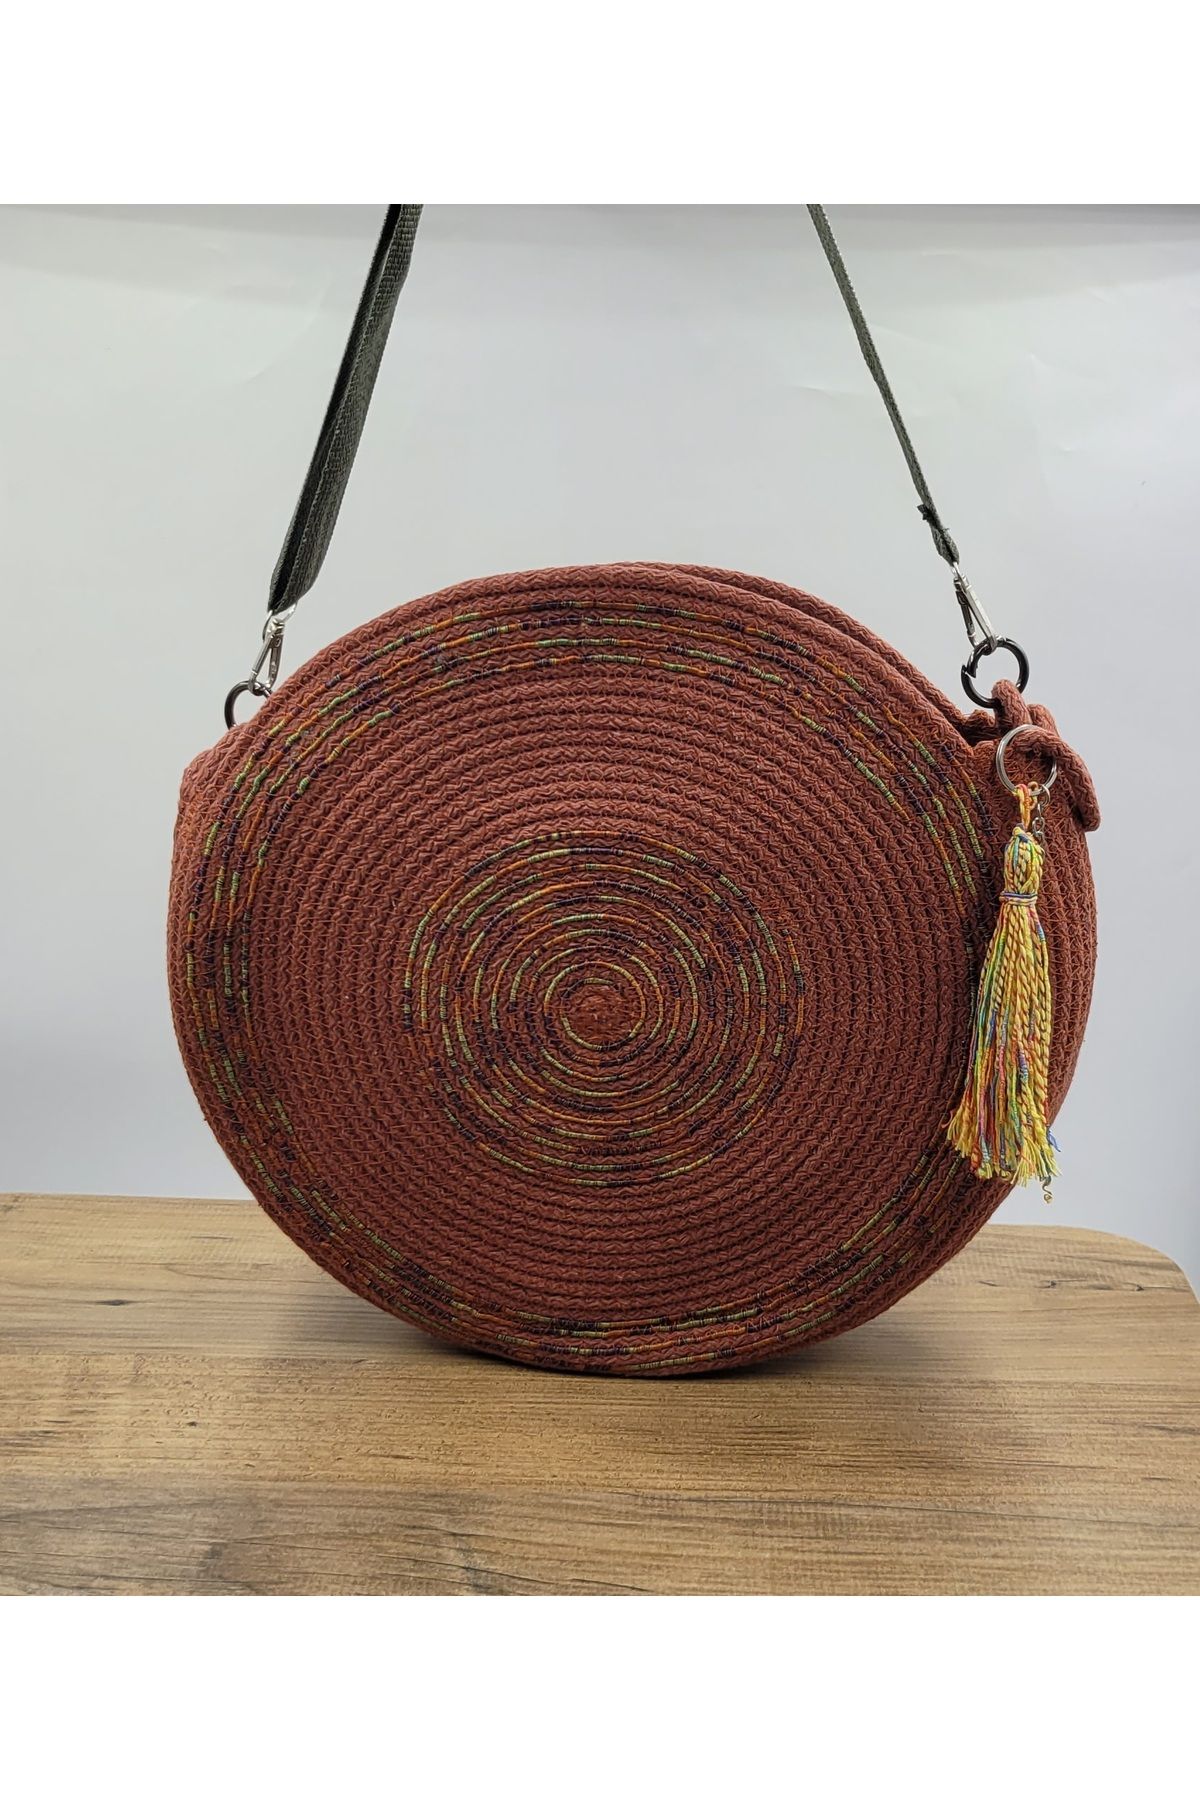 süsslüdüşler El yapımı Omuz çantası ,çapraz çanta, handmade, bohem ,Etnik çanta  33 cm